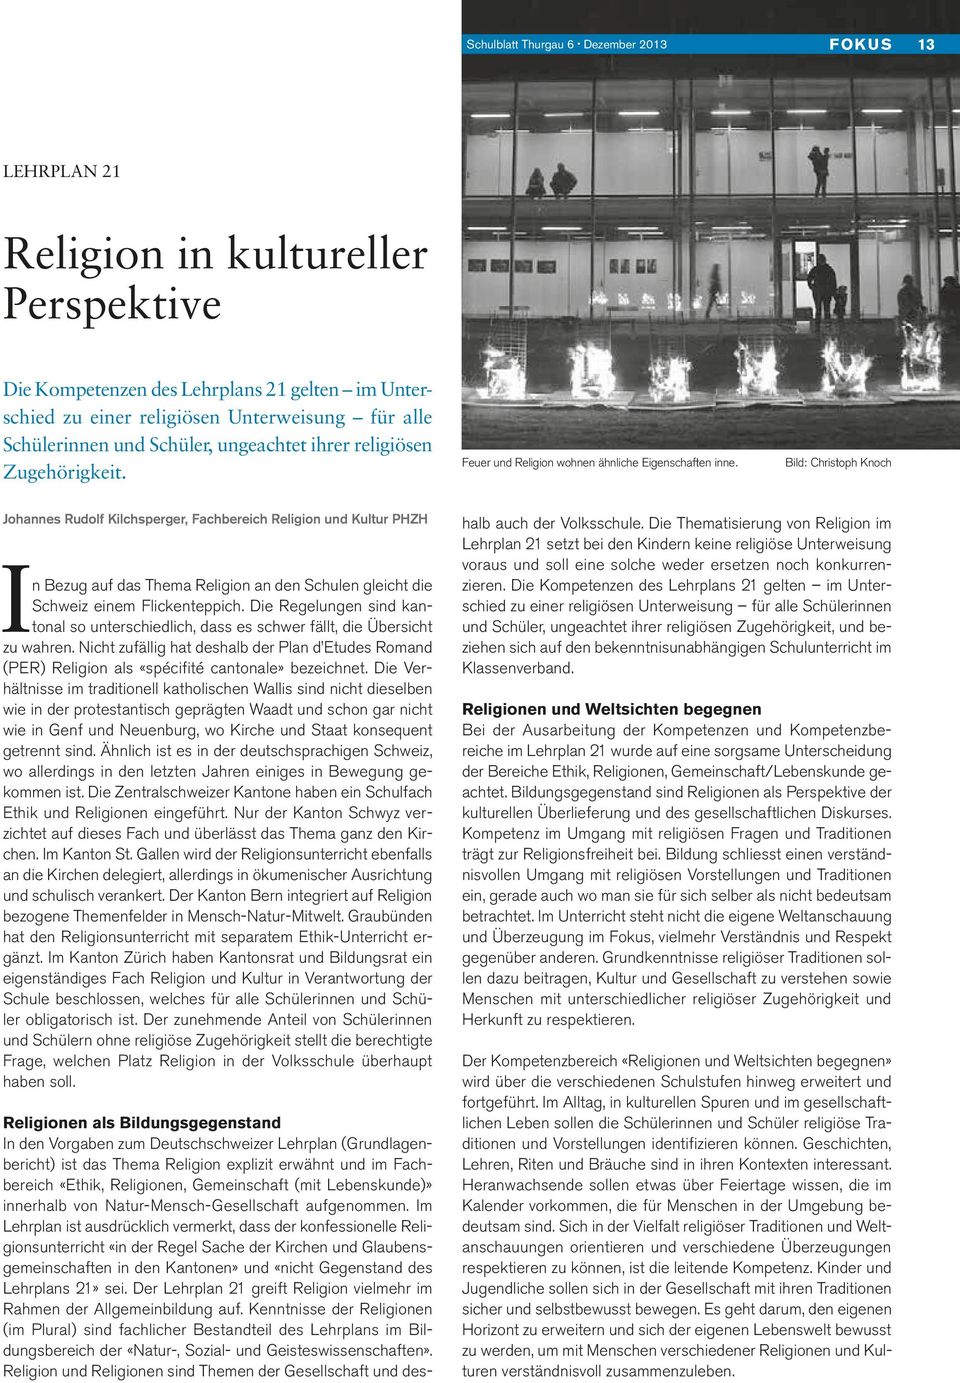 Bild: Christoph Knoch Johannes Rudolf Kilchsperger, Fachbereich Religion und Kultur PHZH In Bezug auf das Thema Religion an den Schulen gleicht die Schweiz einem Flickenteppich.